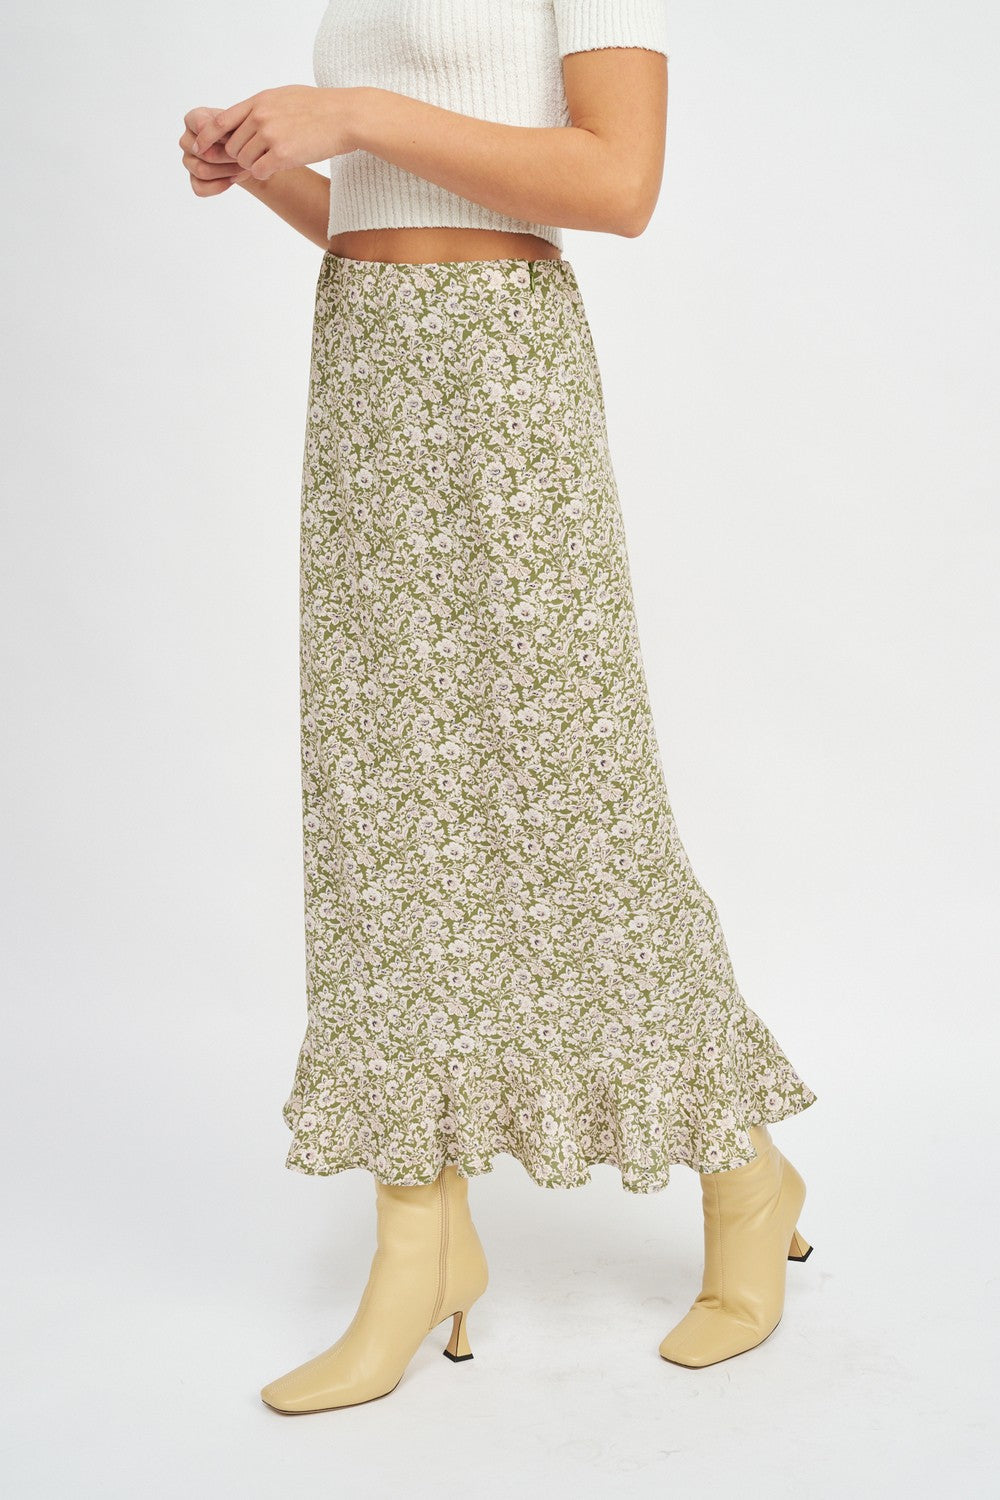 Goddess Garden Midi Skirt